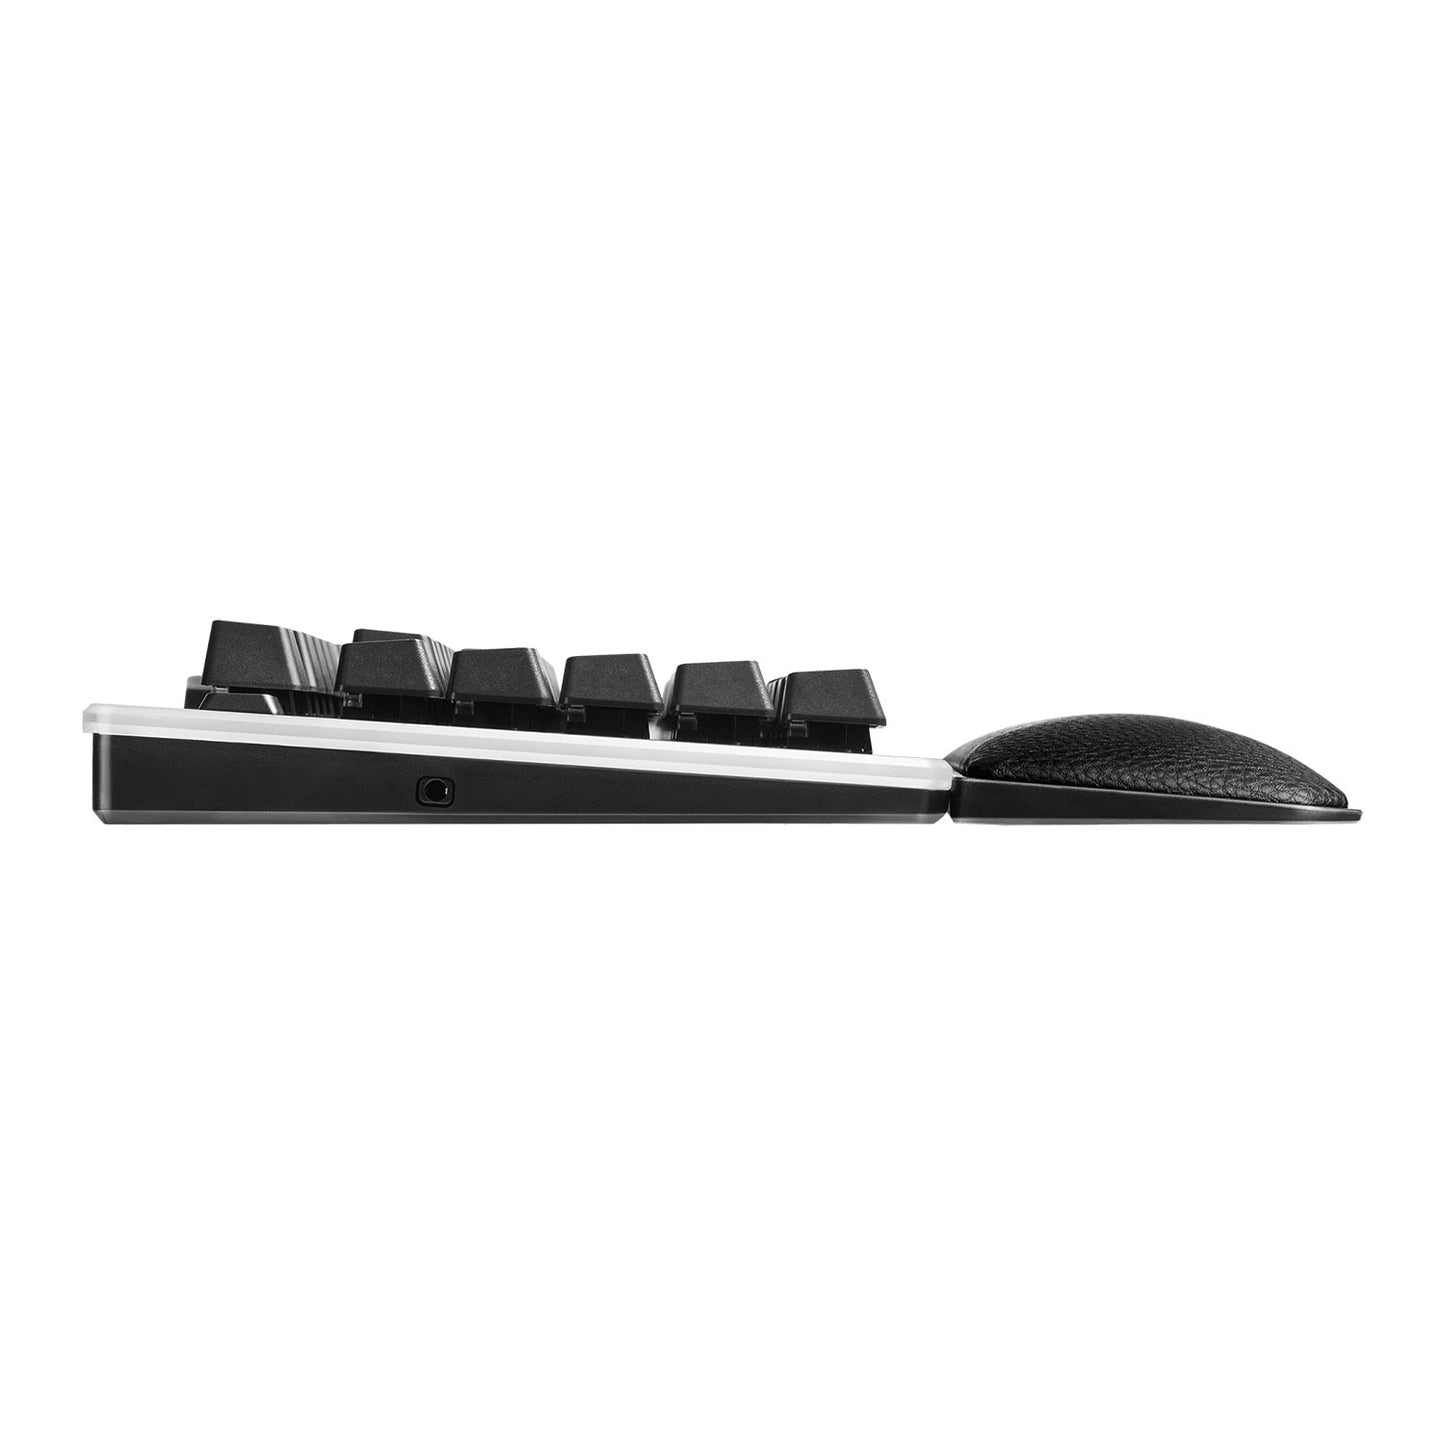 EVGA Wired Z20 RGB LK Dark Grey PC Opto-Mechanical Gaming Keyboard 811-W1-20UK-K2